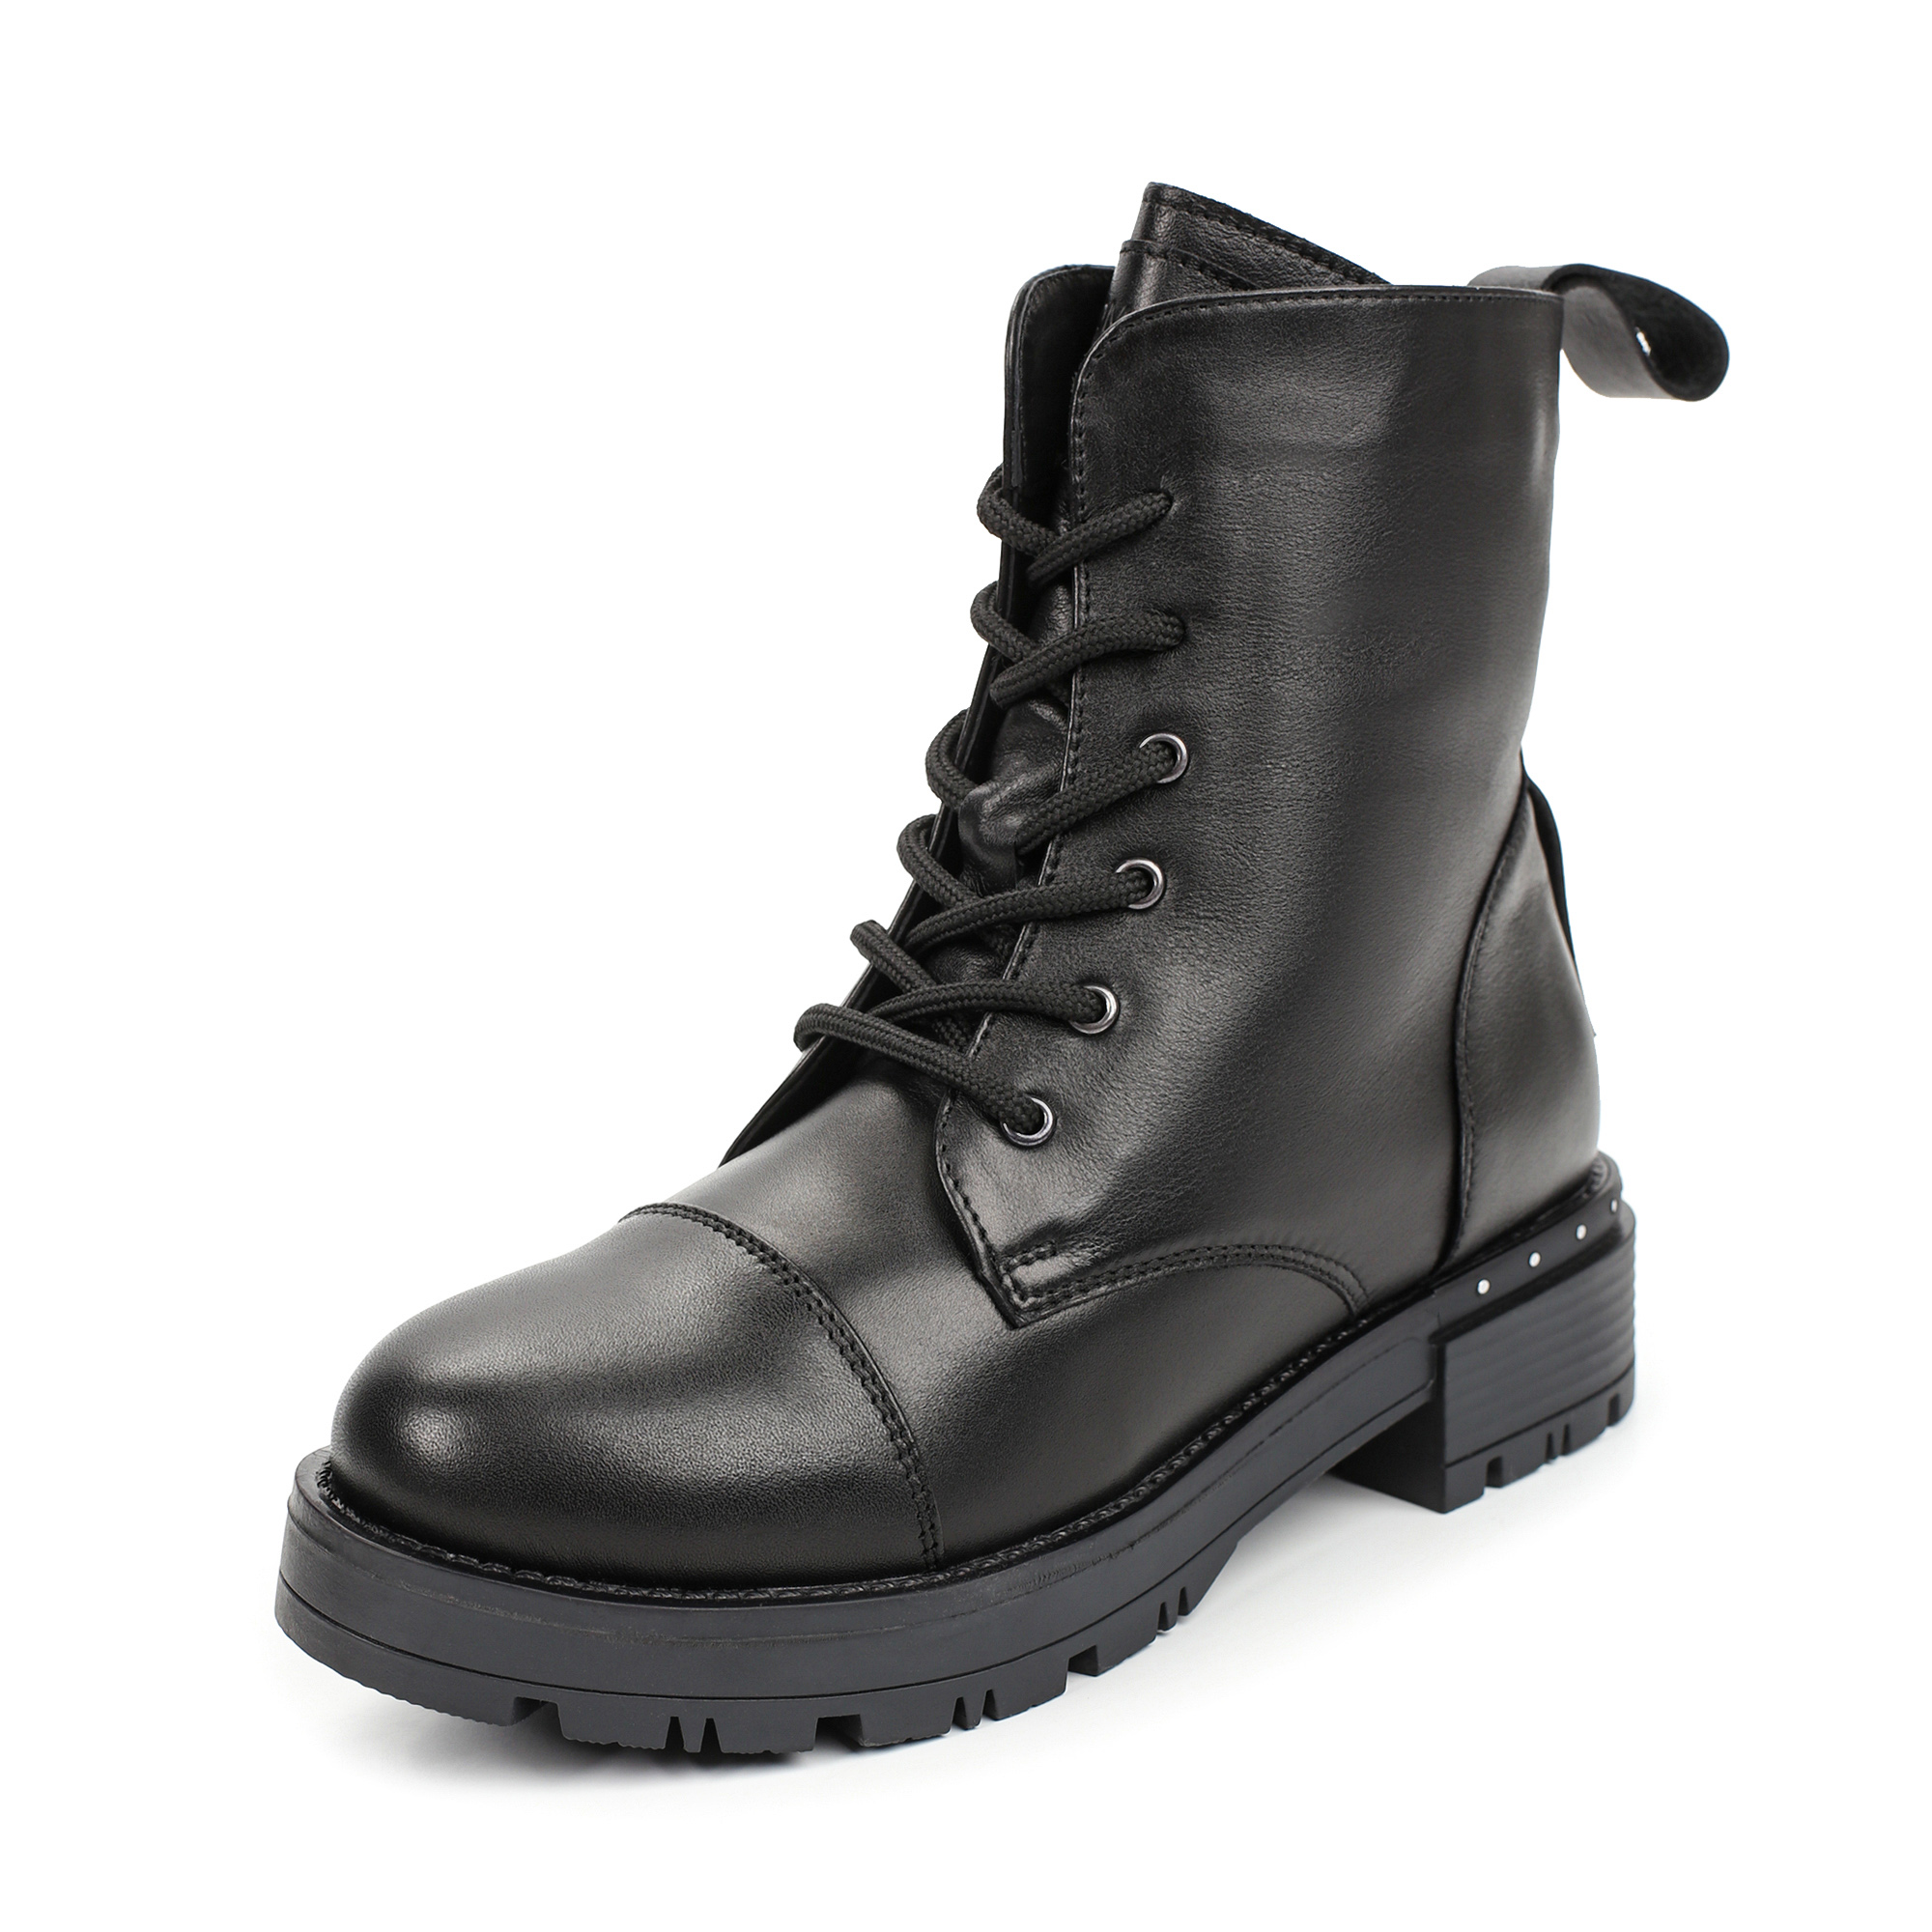 Ботинки Thomas Munz 301 001A 3102, цвет черный, размер 41 - фото 2